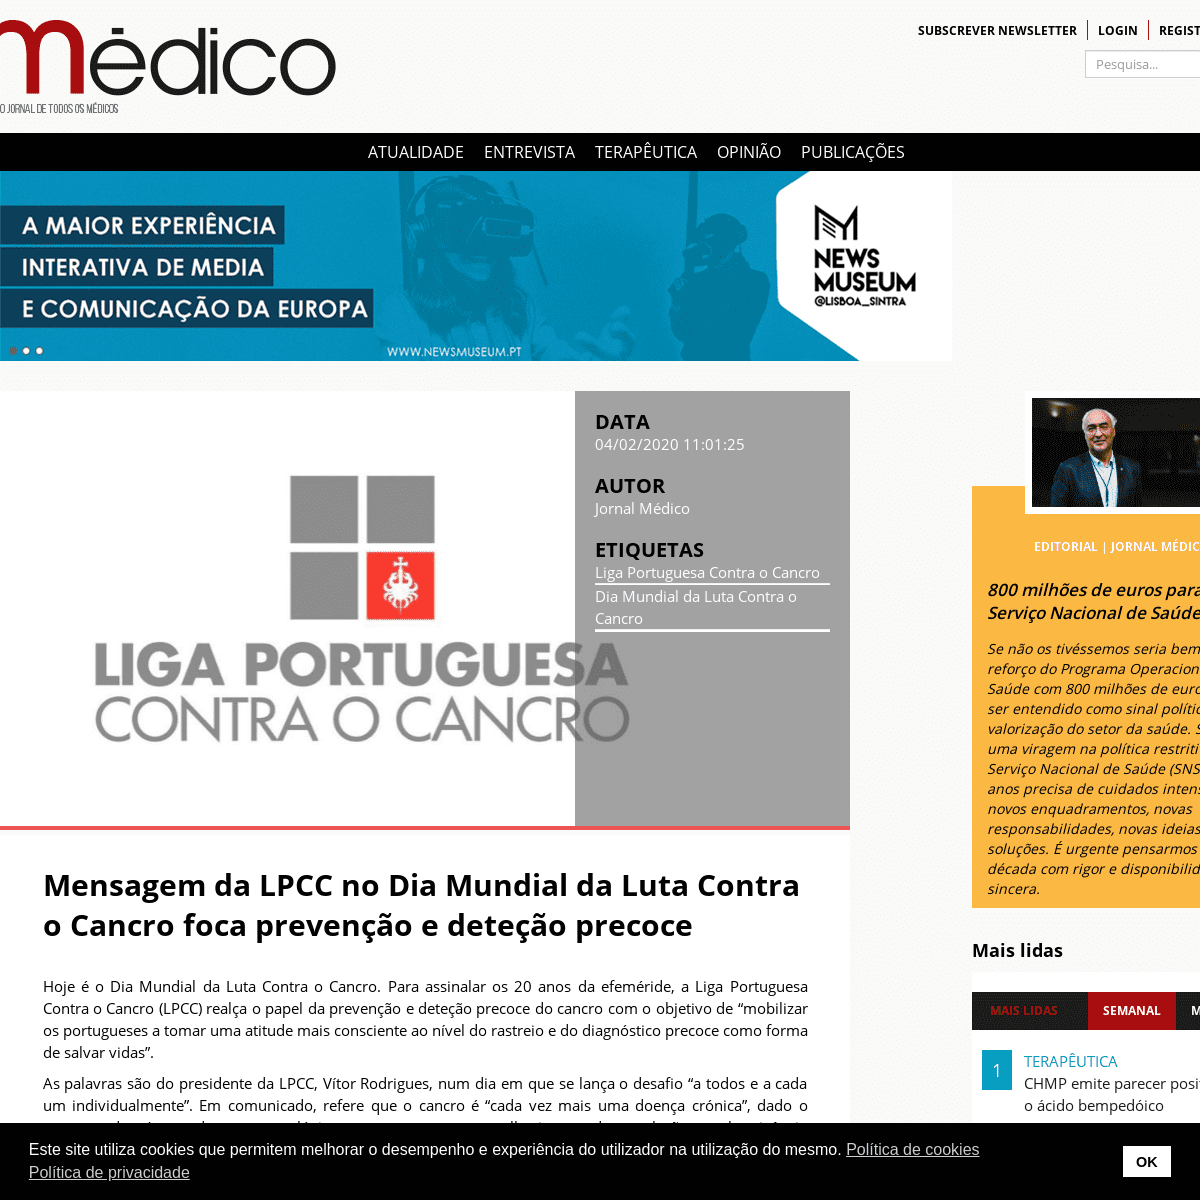 A complete backup of www.jornalmedico.pt/atualidade/38380-mensagem-da-liga-portuguesa-contra-o-cancro-no-dia-mundial-do-cancro-f